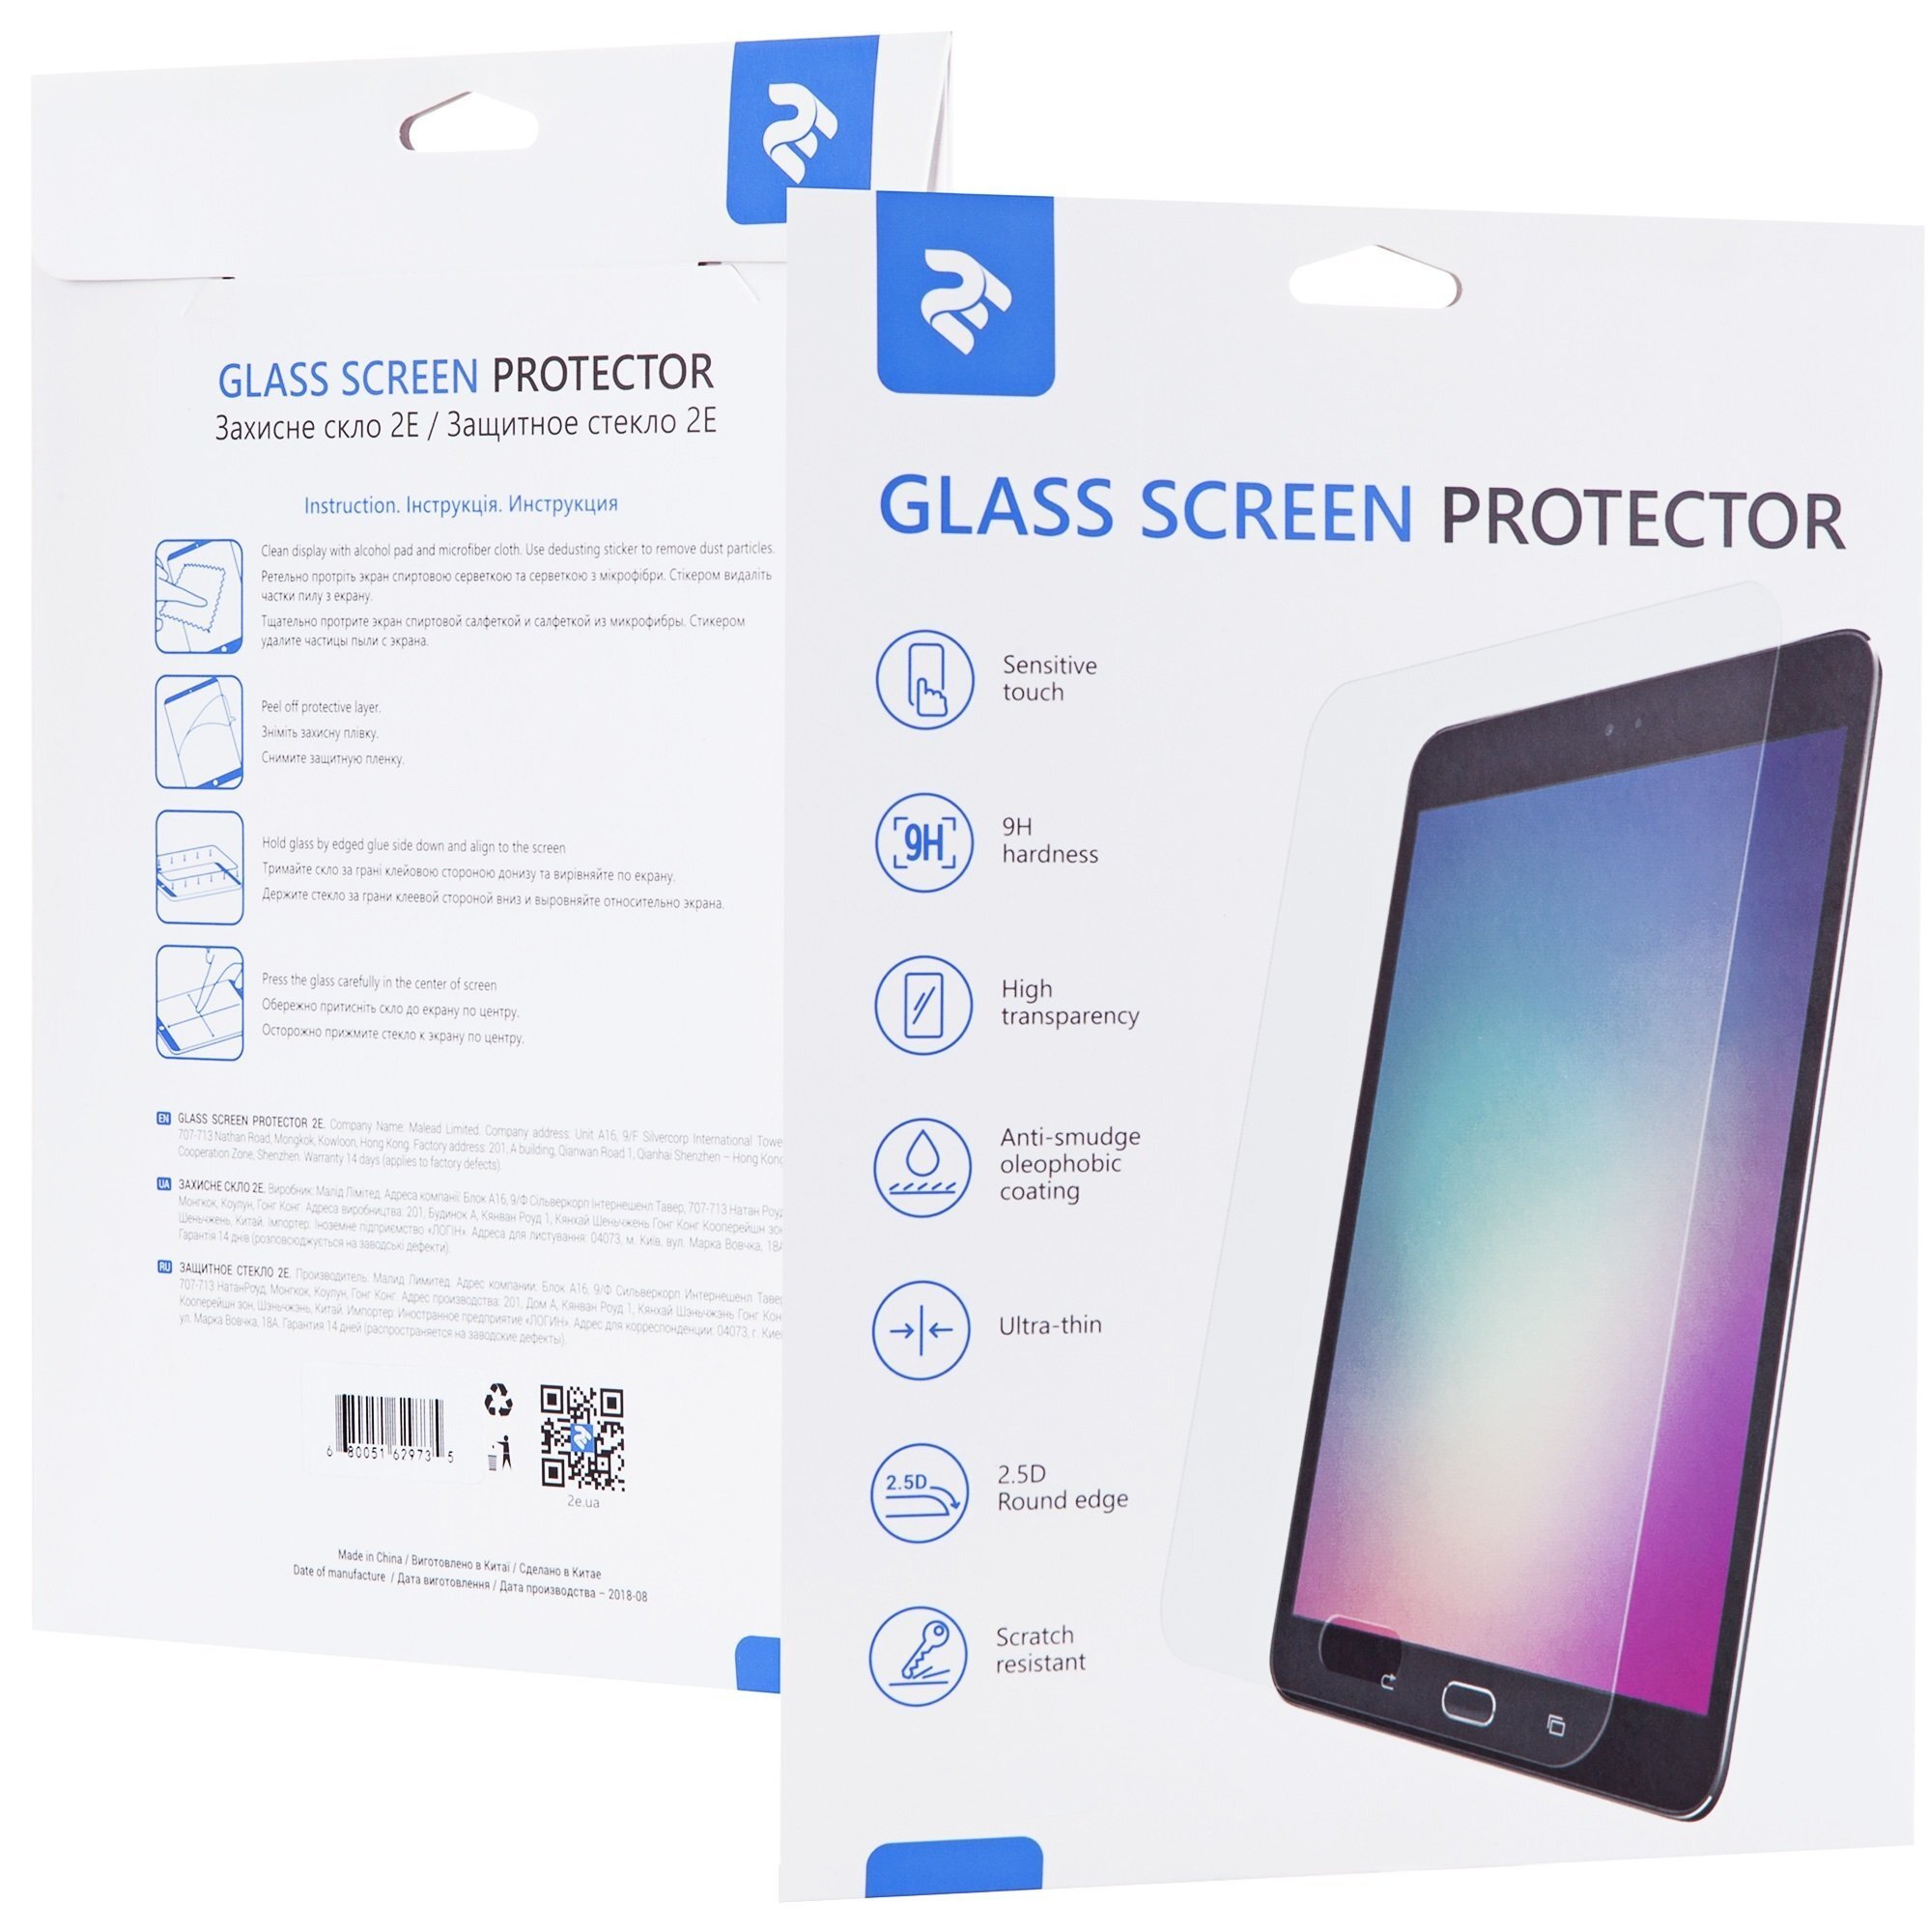 Защитное стекло 2E для Galaxy Tab S7 Lite (SM-T730/735 ) 2.5D Clear (2E-G-TABS7L-LT2.5D-CL) фото 1